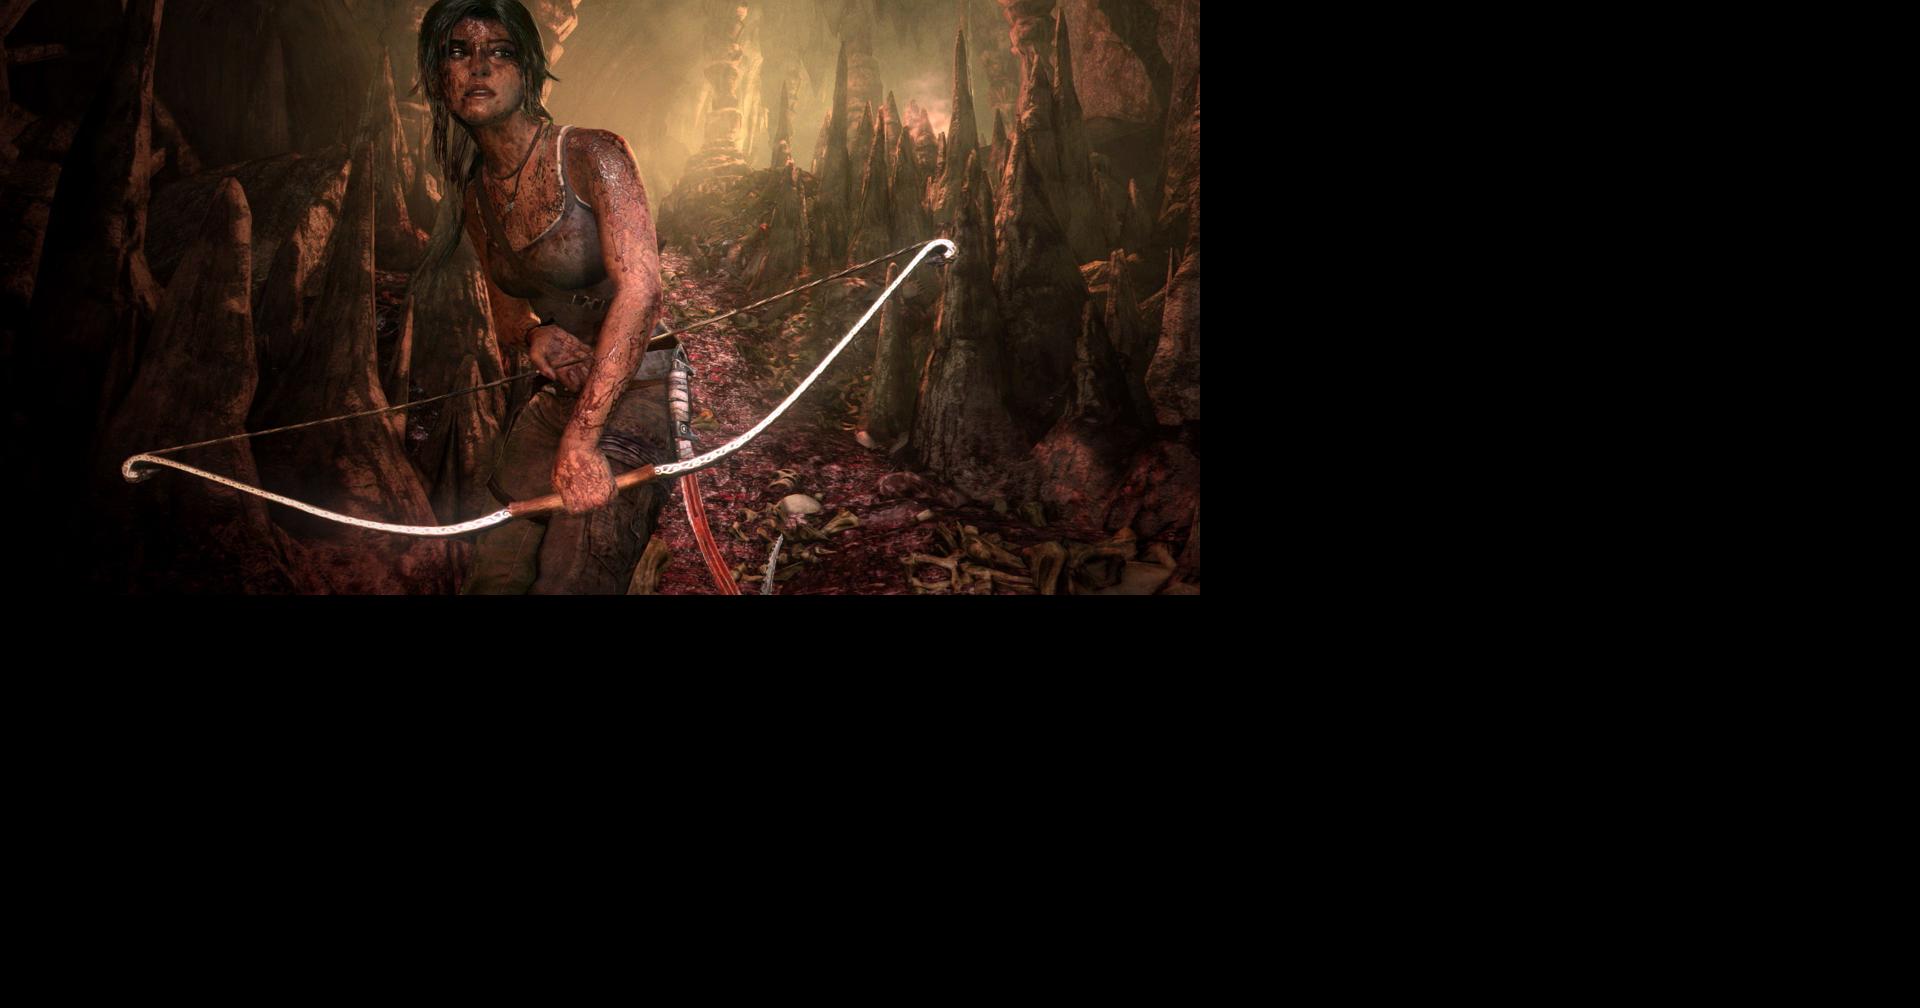 Rise Of The Tomb Raider - Rise of the Tomb Raider não terá modo multiplayer  clássico - The Enemy